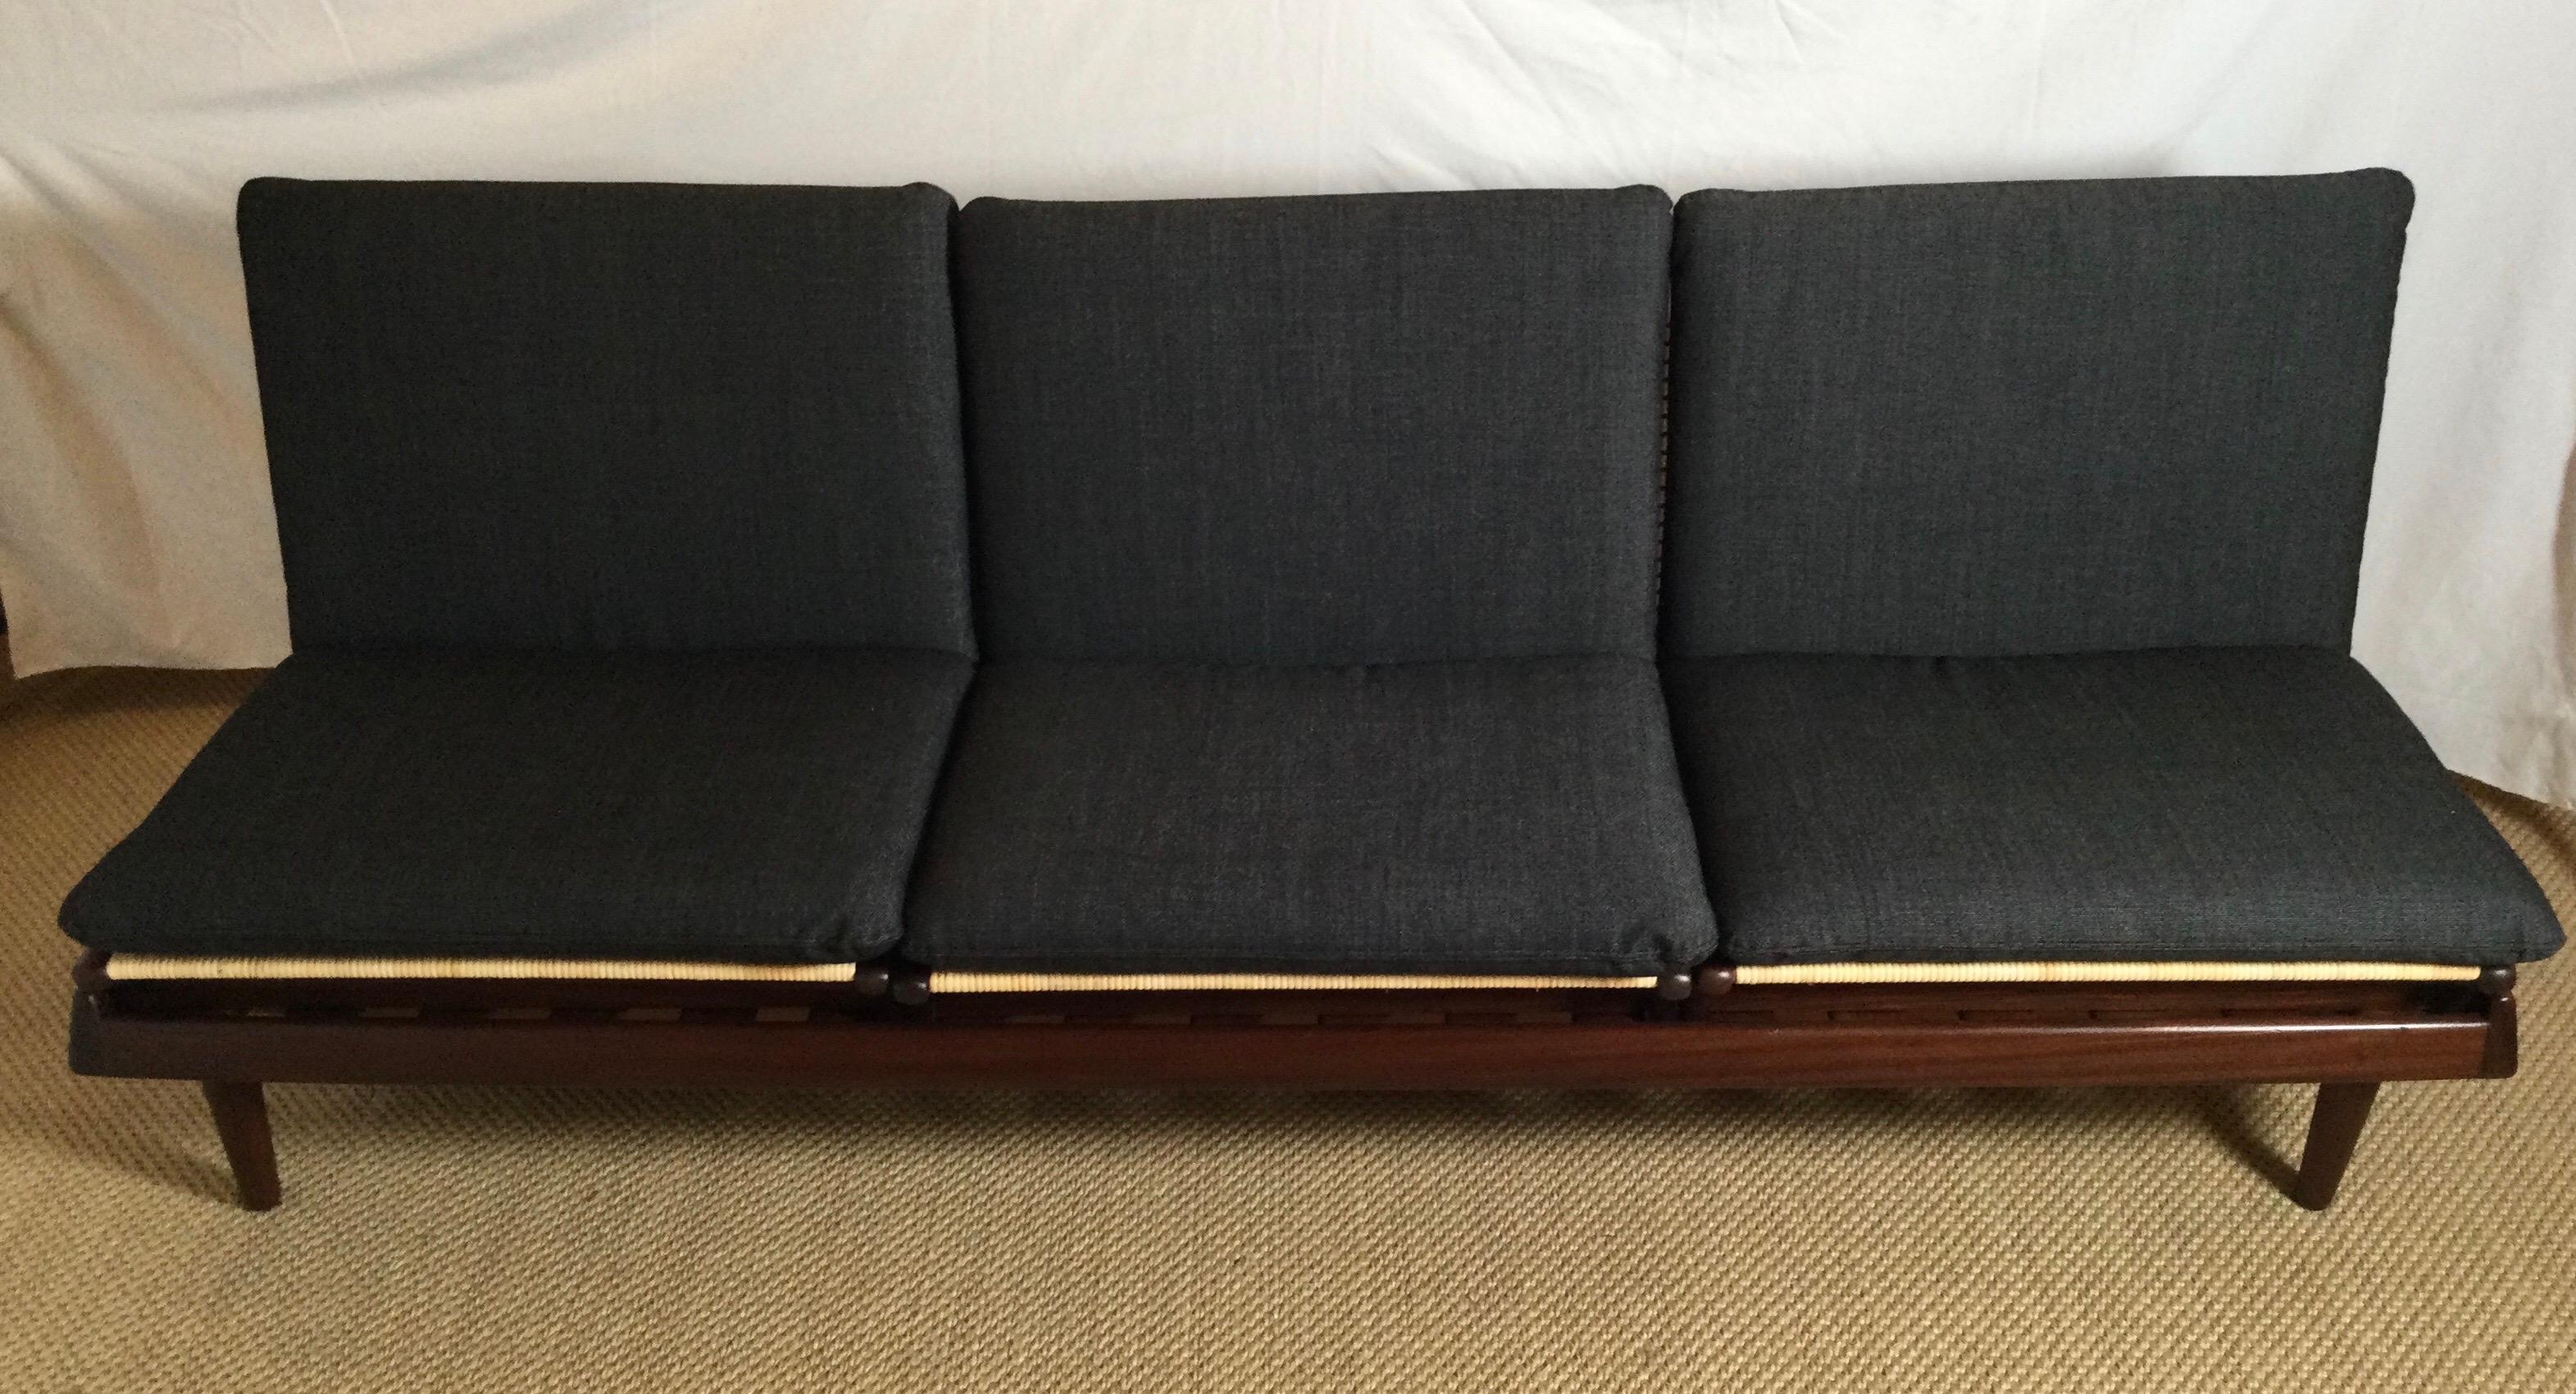 Un extraordinaire exemple précoce de canapé modulaire TV conçu par Hans Olsen et fabriqué par Bramin au Danemark. Ce canapé modulaire se compose d'un banc avec trois sièges. Le banc peut être utilisé comme un lit de jour ou le cadre surélevé pour